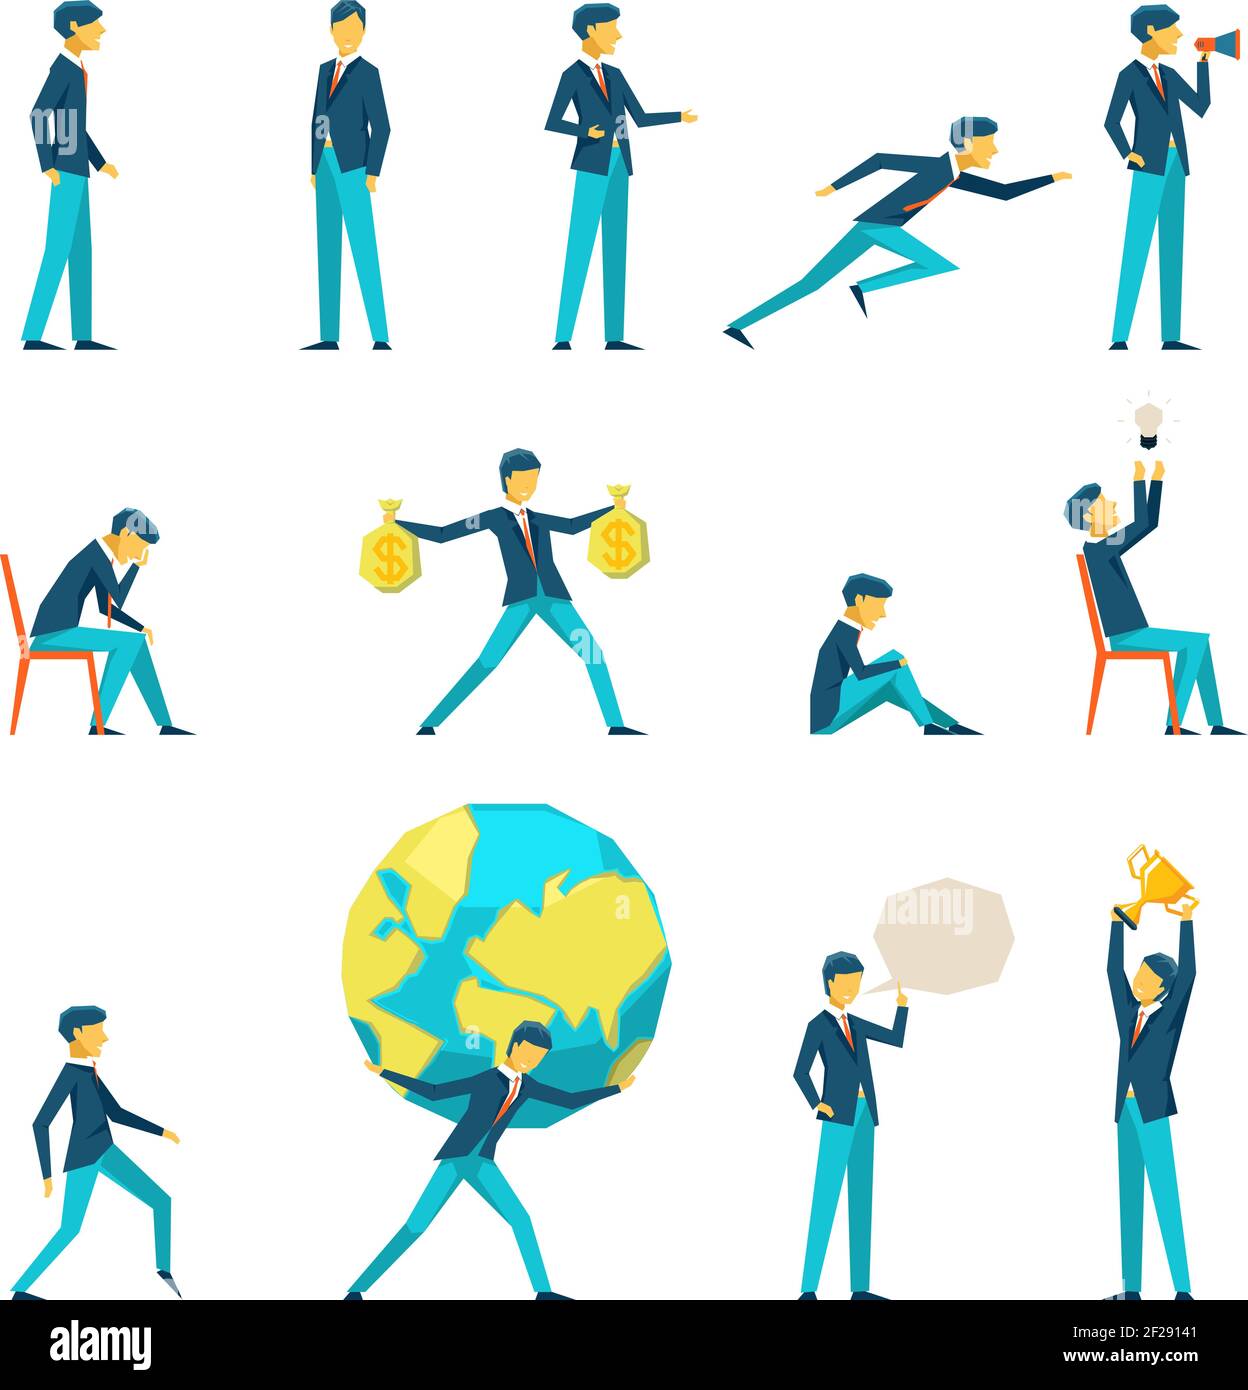 Personaje de hombre de negocios de dibujos animados en varias poses.  Motivación e inspiración, pensamiento y ganancias, ilustración vectorial  Imagen Vector de stock - Alamy